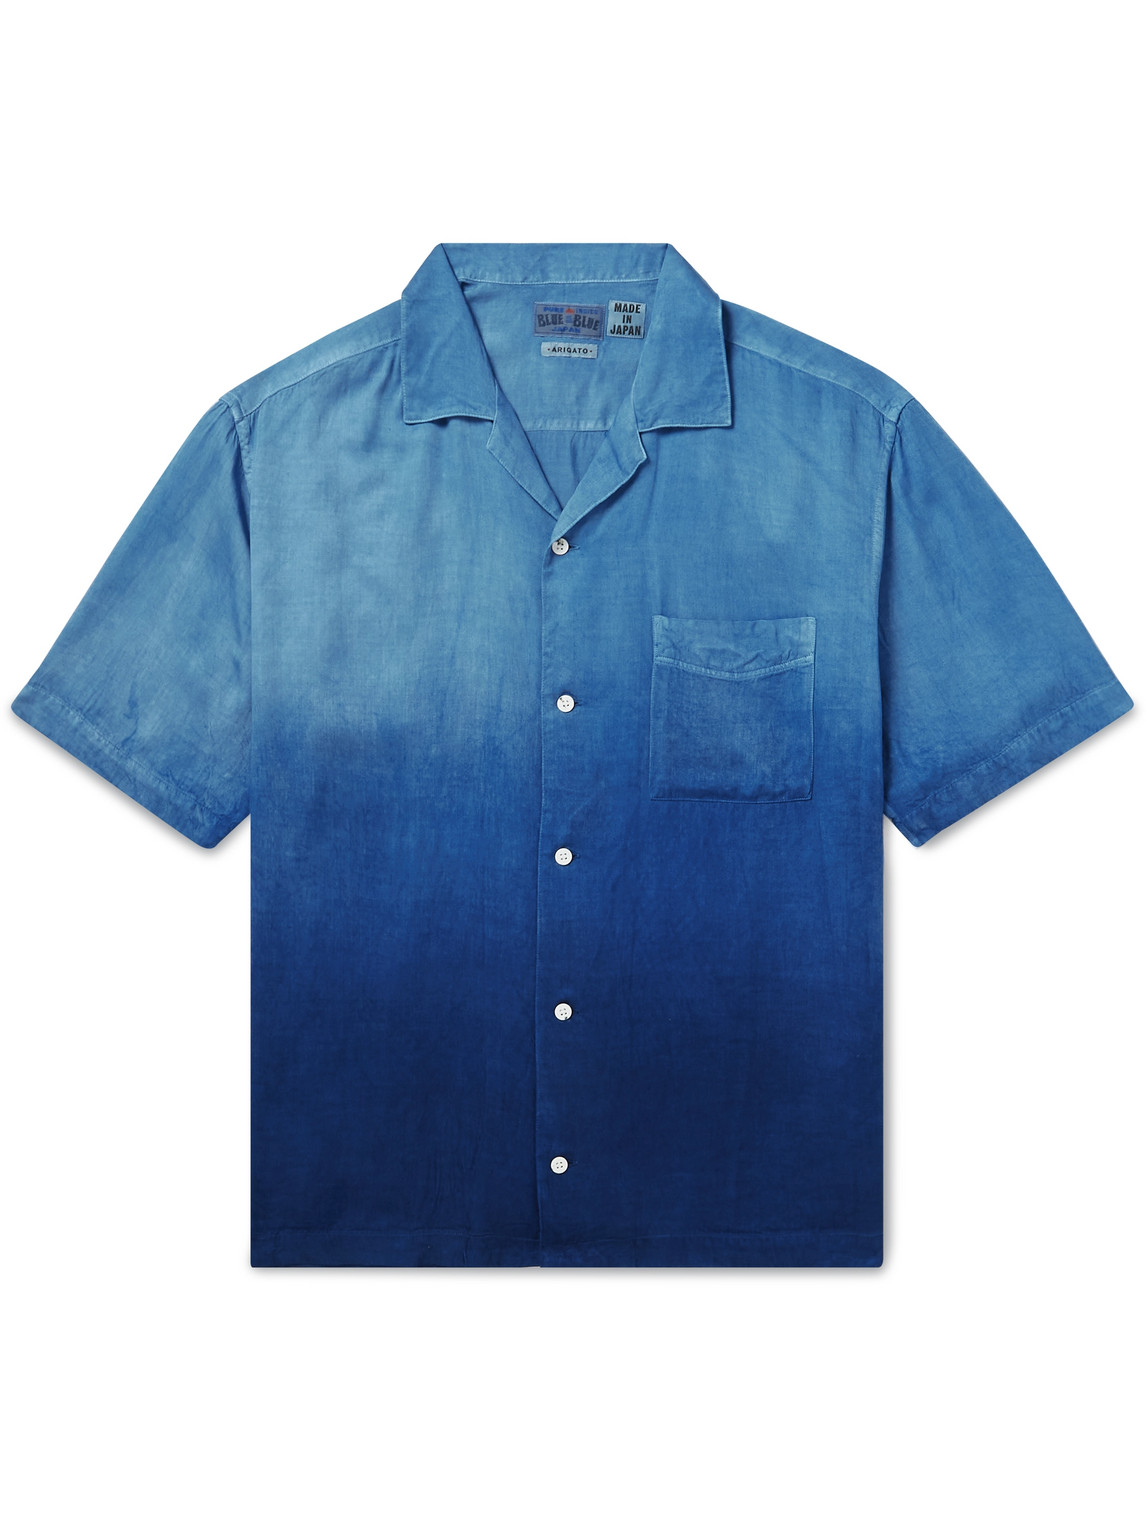 Camp-Collar Indigo-Dyed Woven Shirt